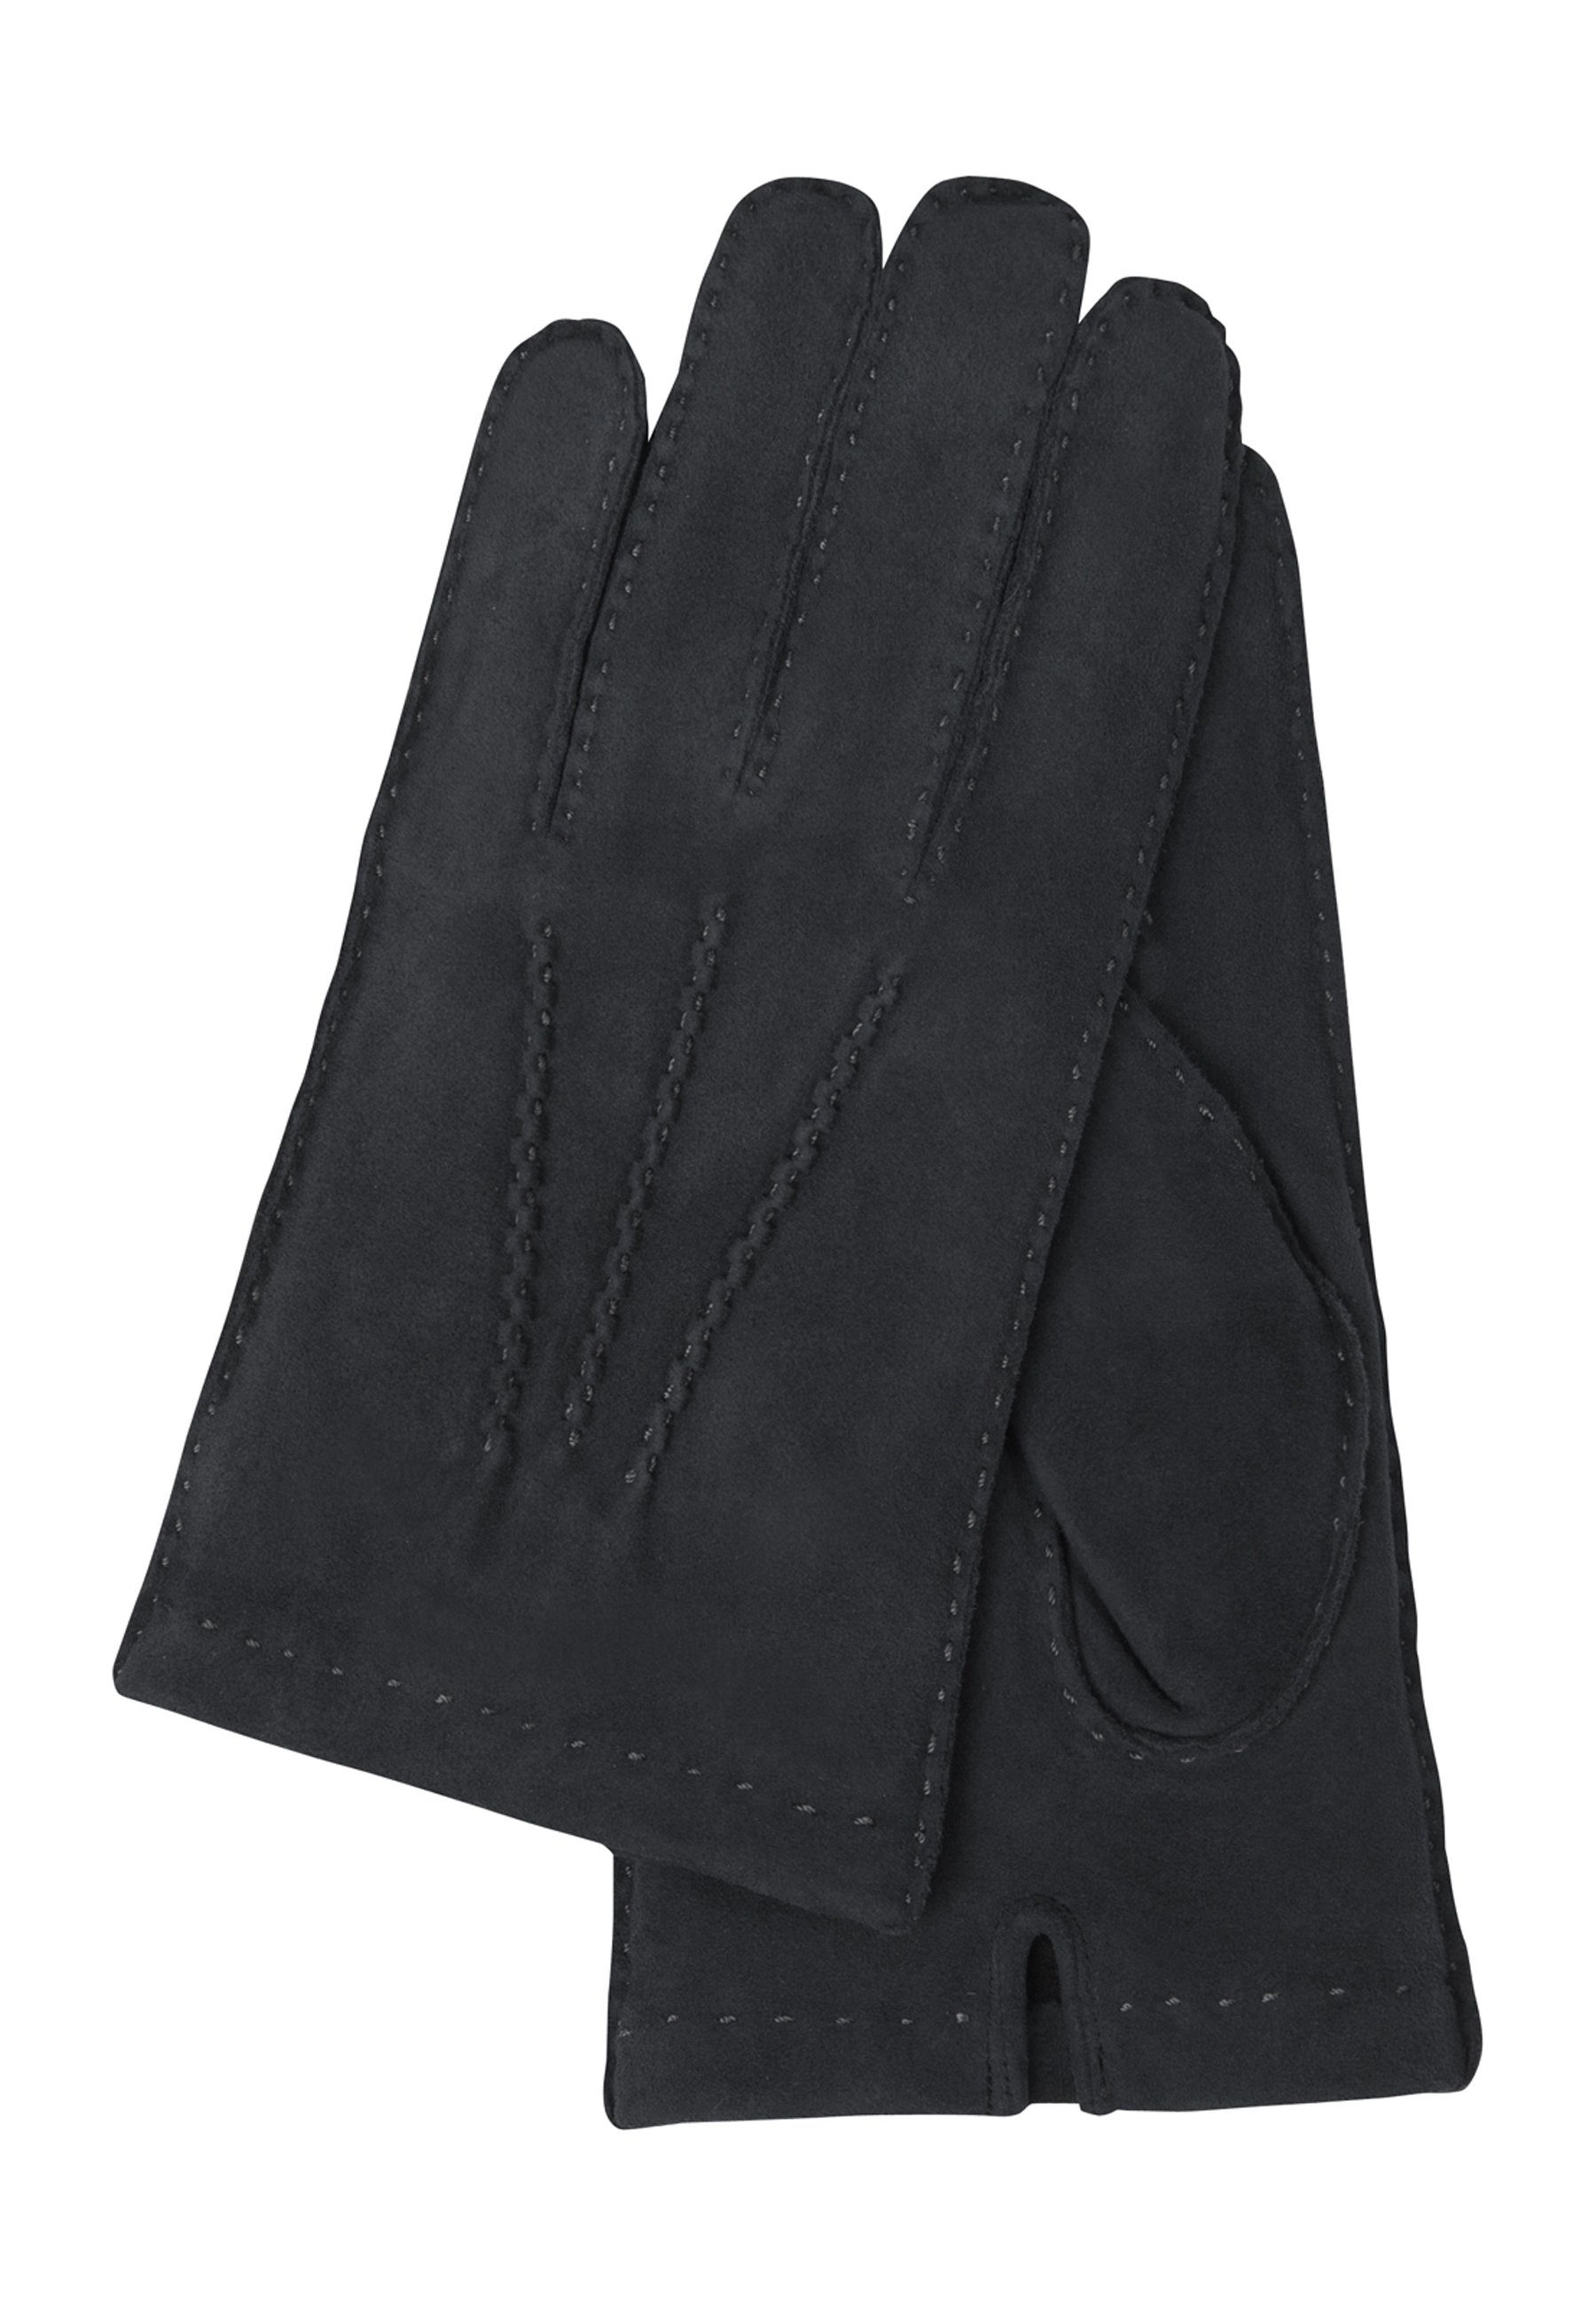 GRETCHEN Lederhandschuhe aus Jendrik Ziegenvelours Gloves Mens schwarz italienischem